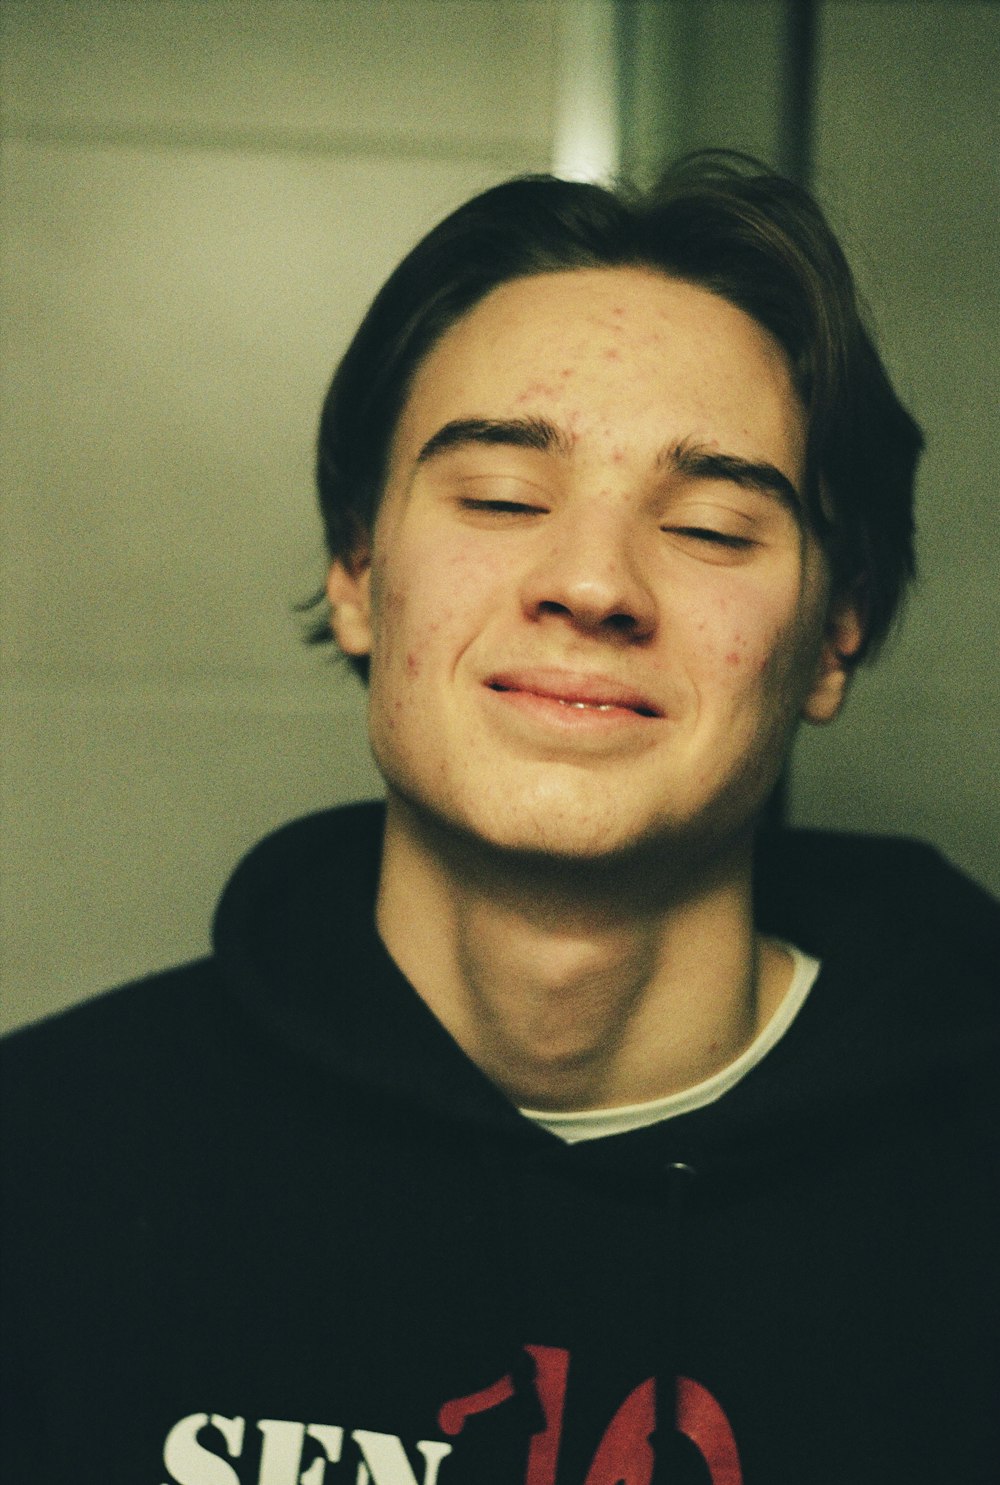 Un giovane con le lentiggini sul viso